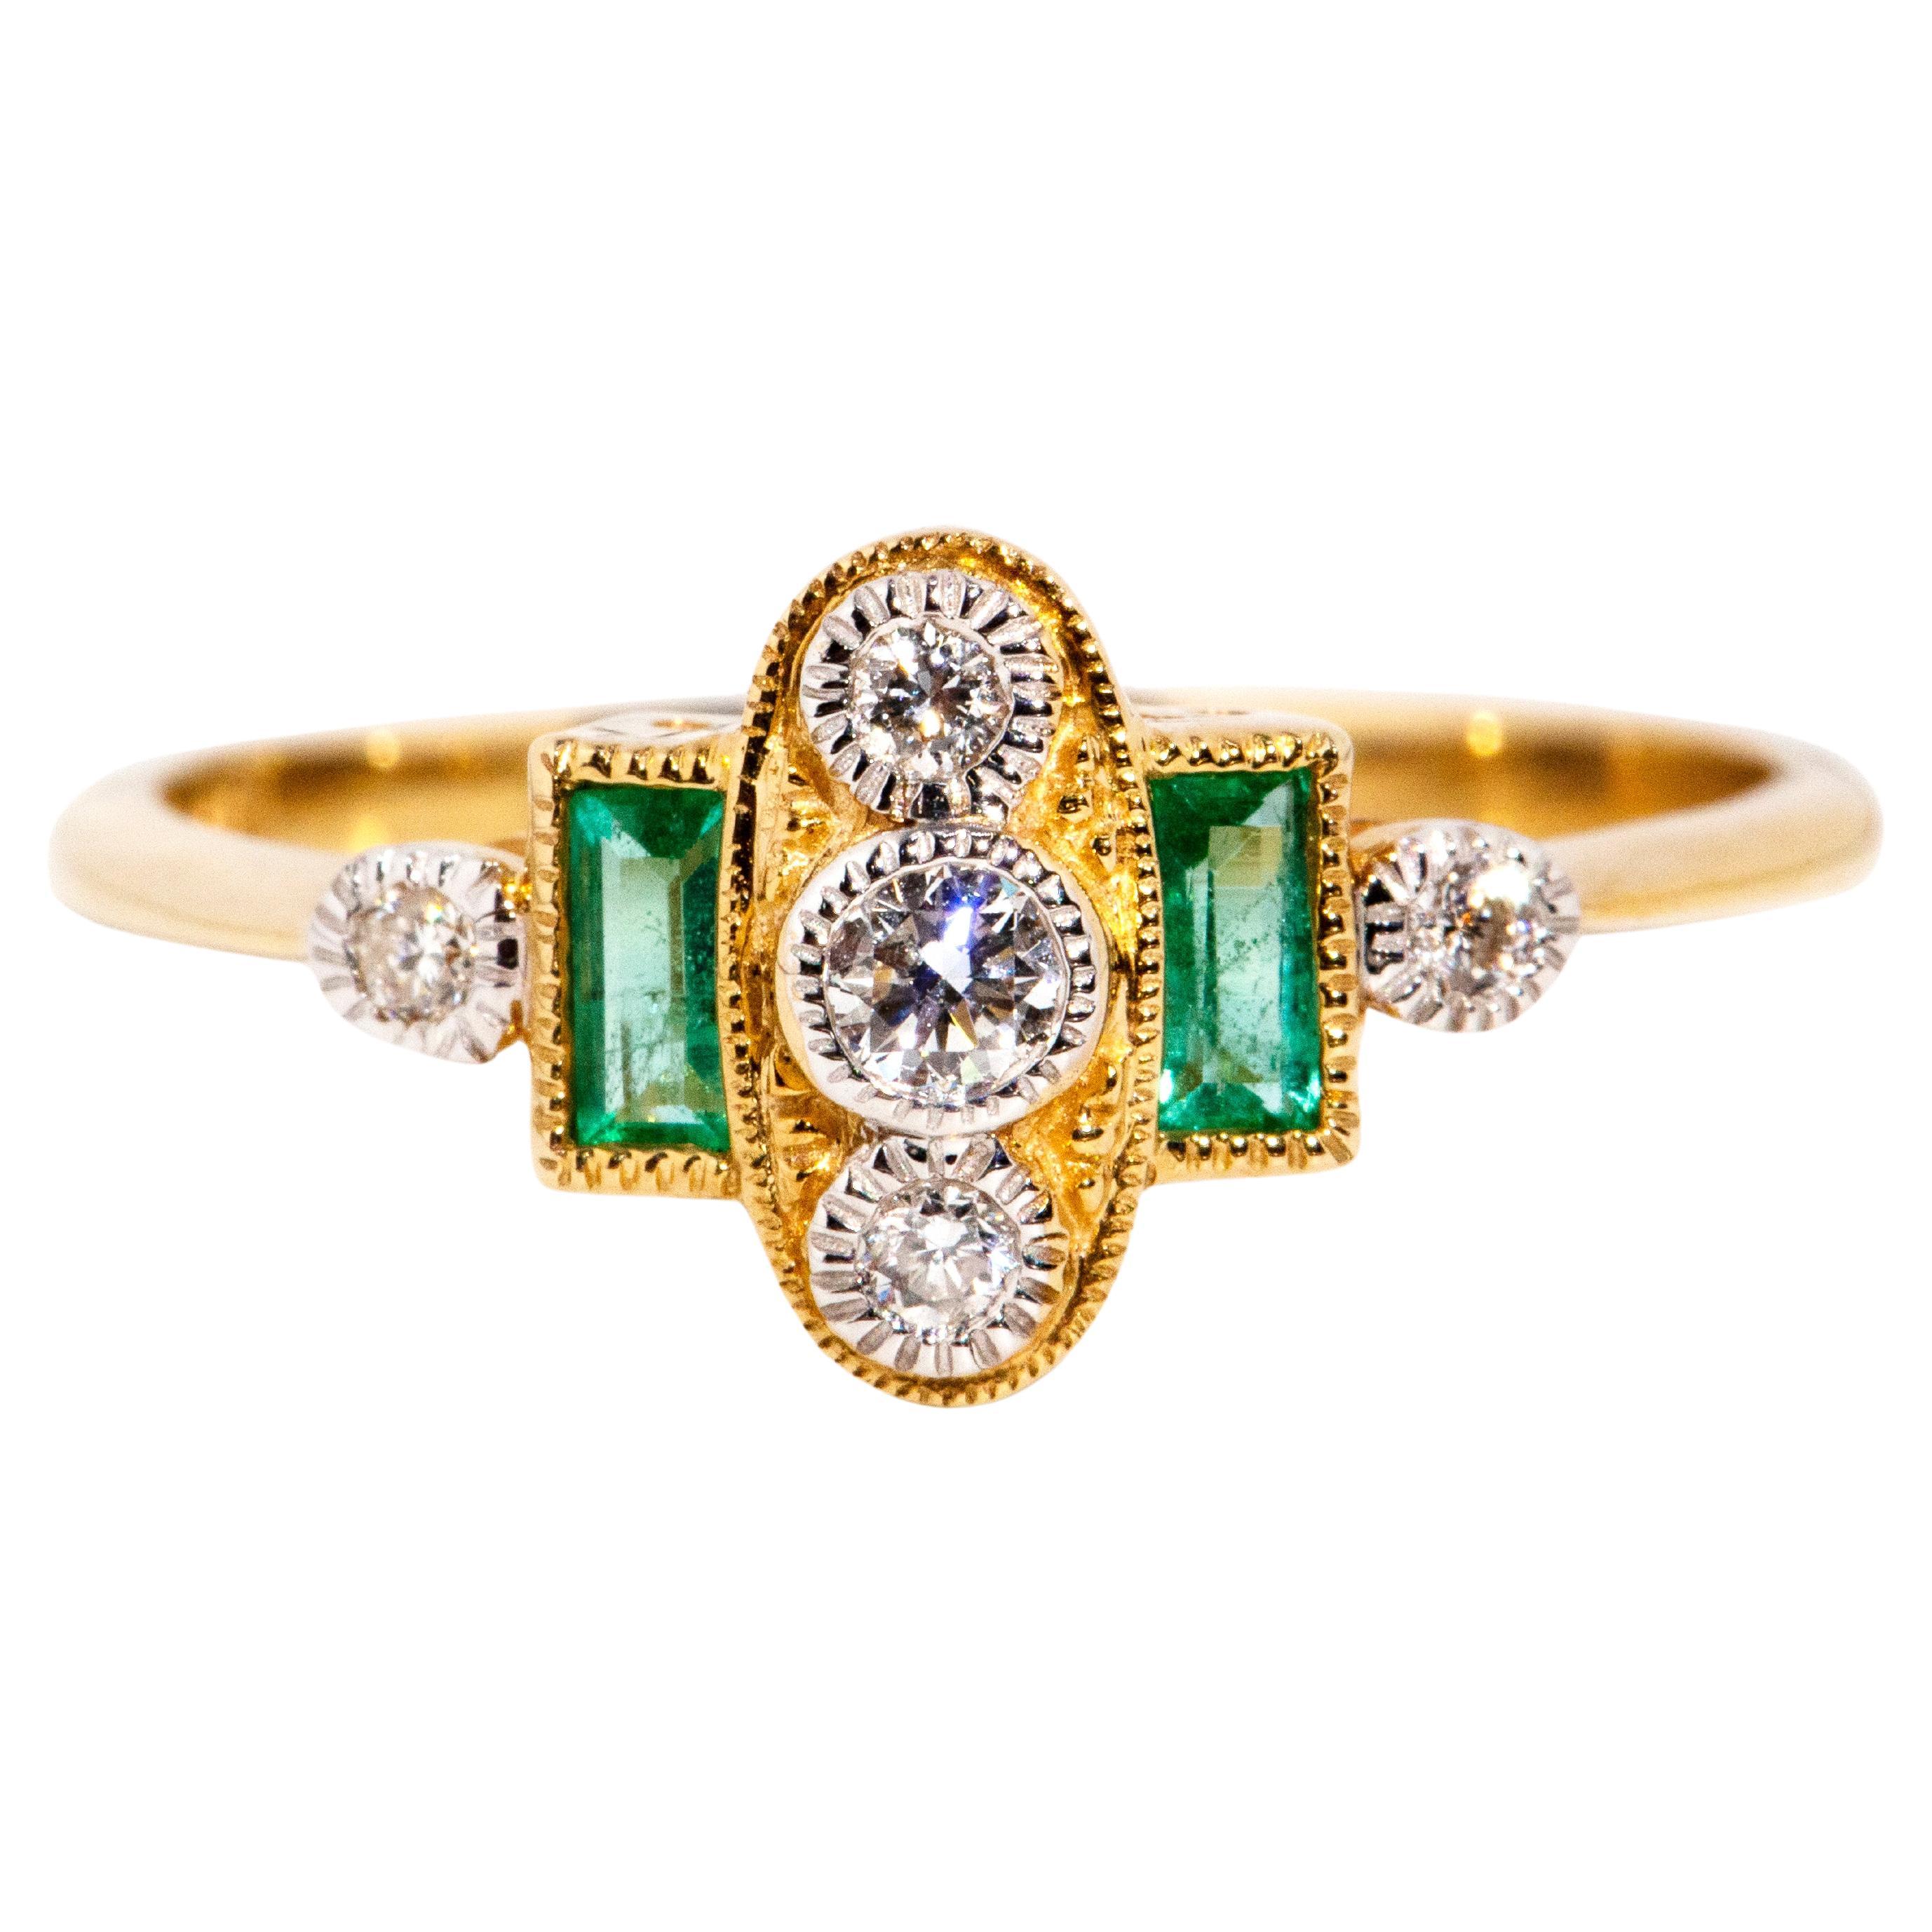 Bague d'inspiration vintage en or jaune 9 carats avec diamants et émeraudes vertes brillantes